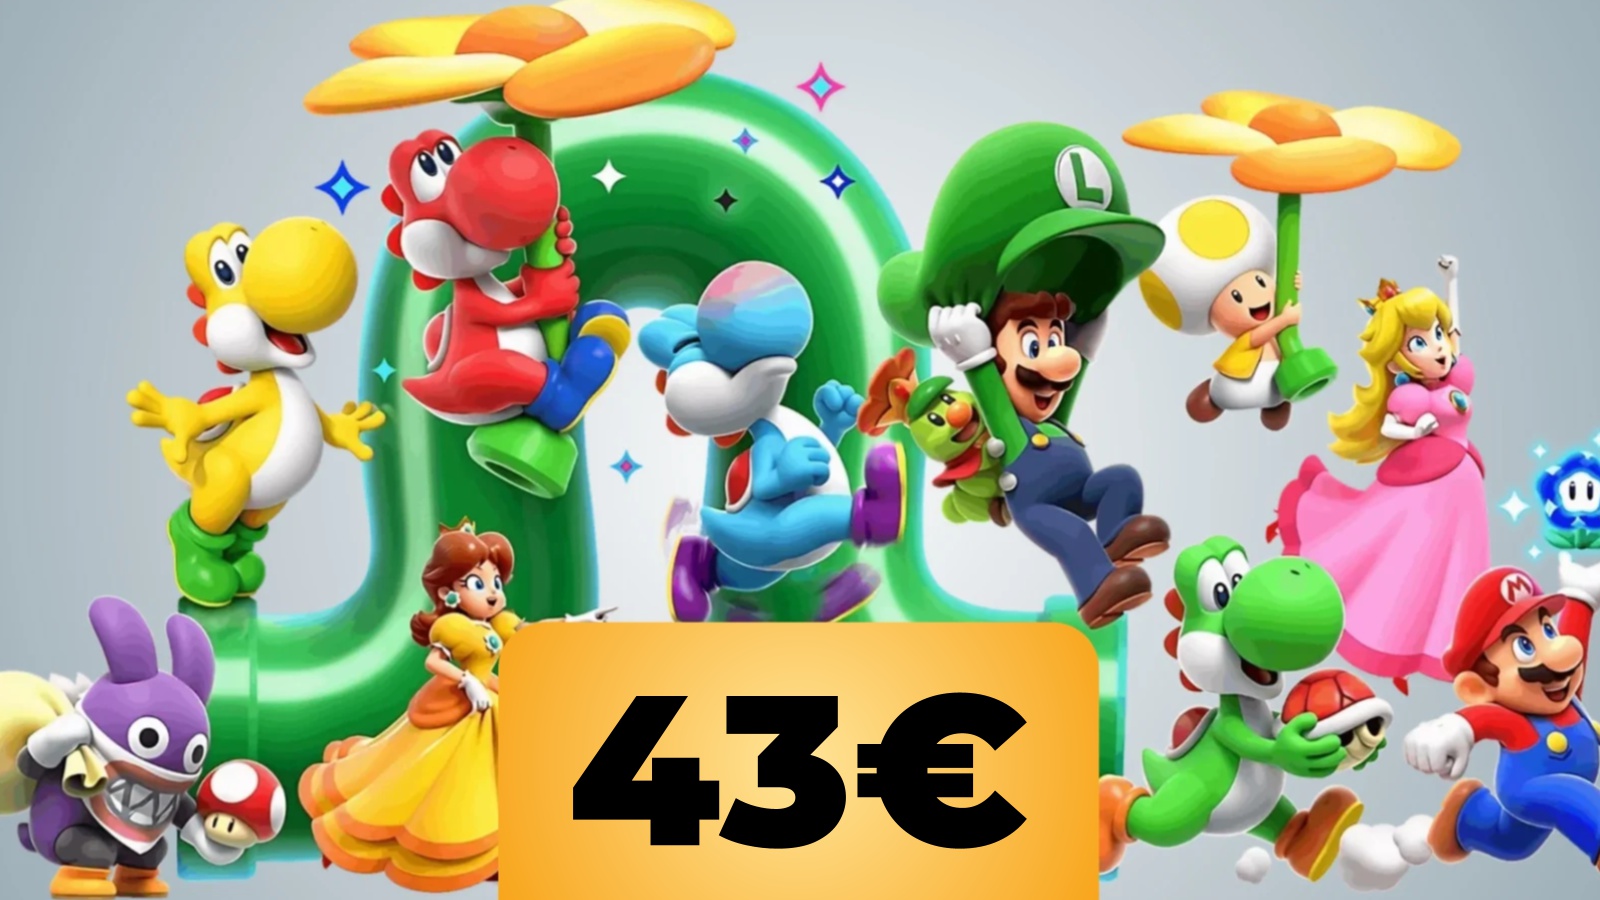 Yoshi in più colori, Daisy, Luigi, Mario, Peach, Toad da Super Mario Bros. Wonder e sotto il prezzo dell'offerta di Amazon